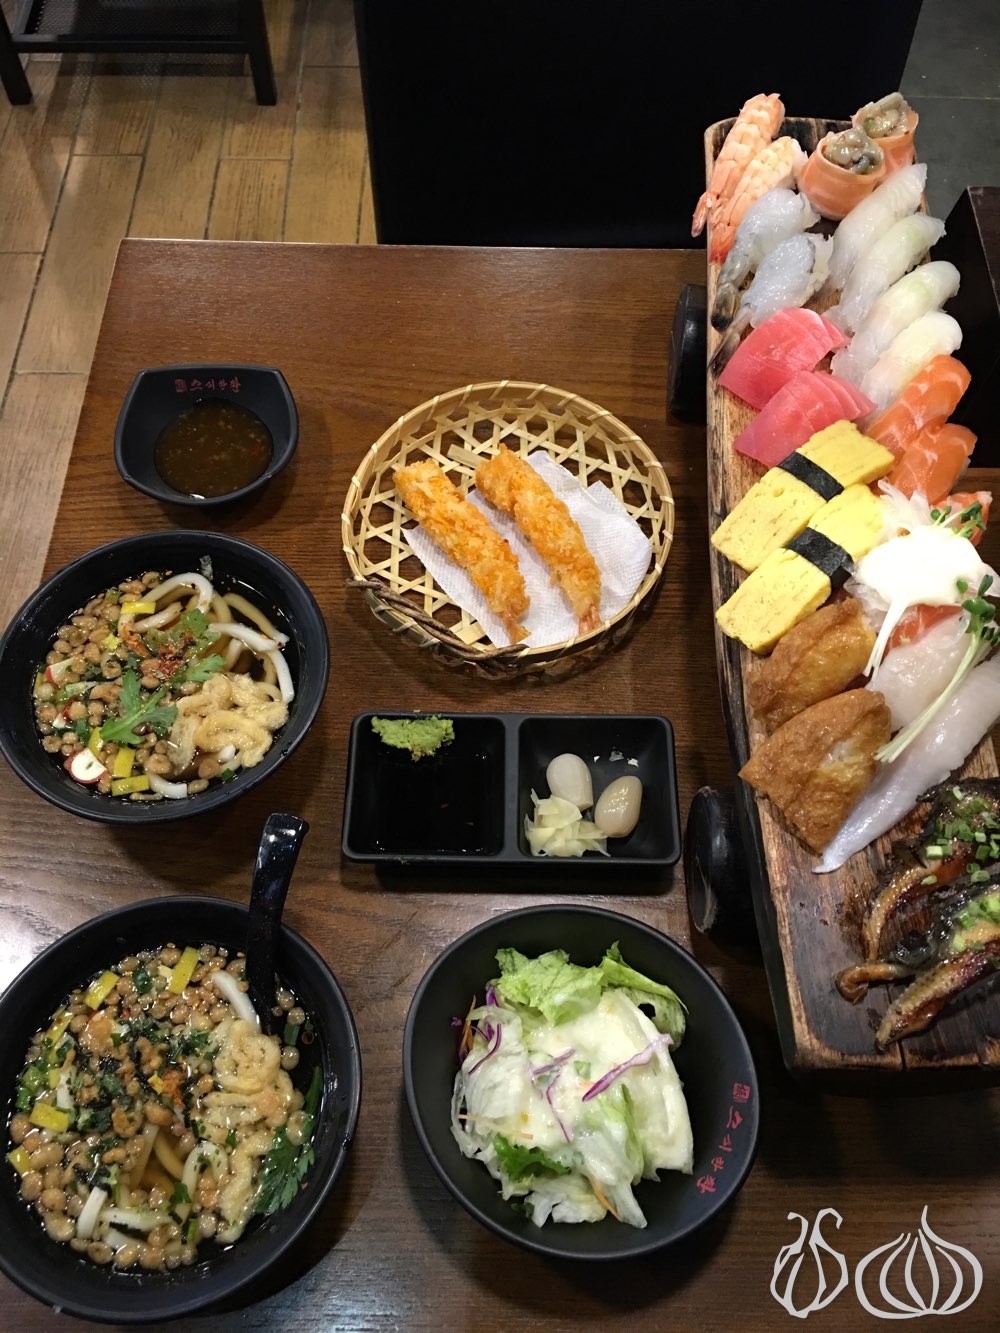 sushi-hanpan-japanese-seoul-korea102016-05-07-02-46-48